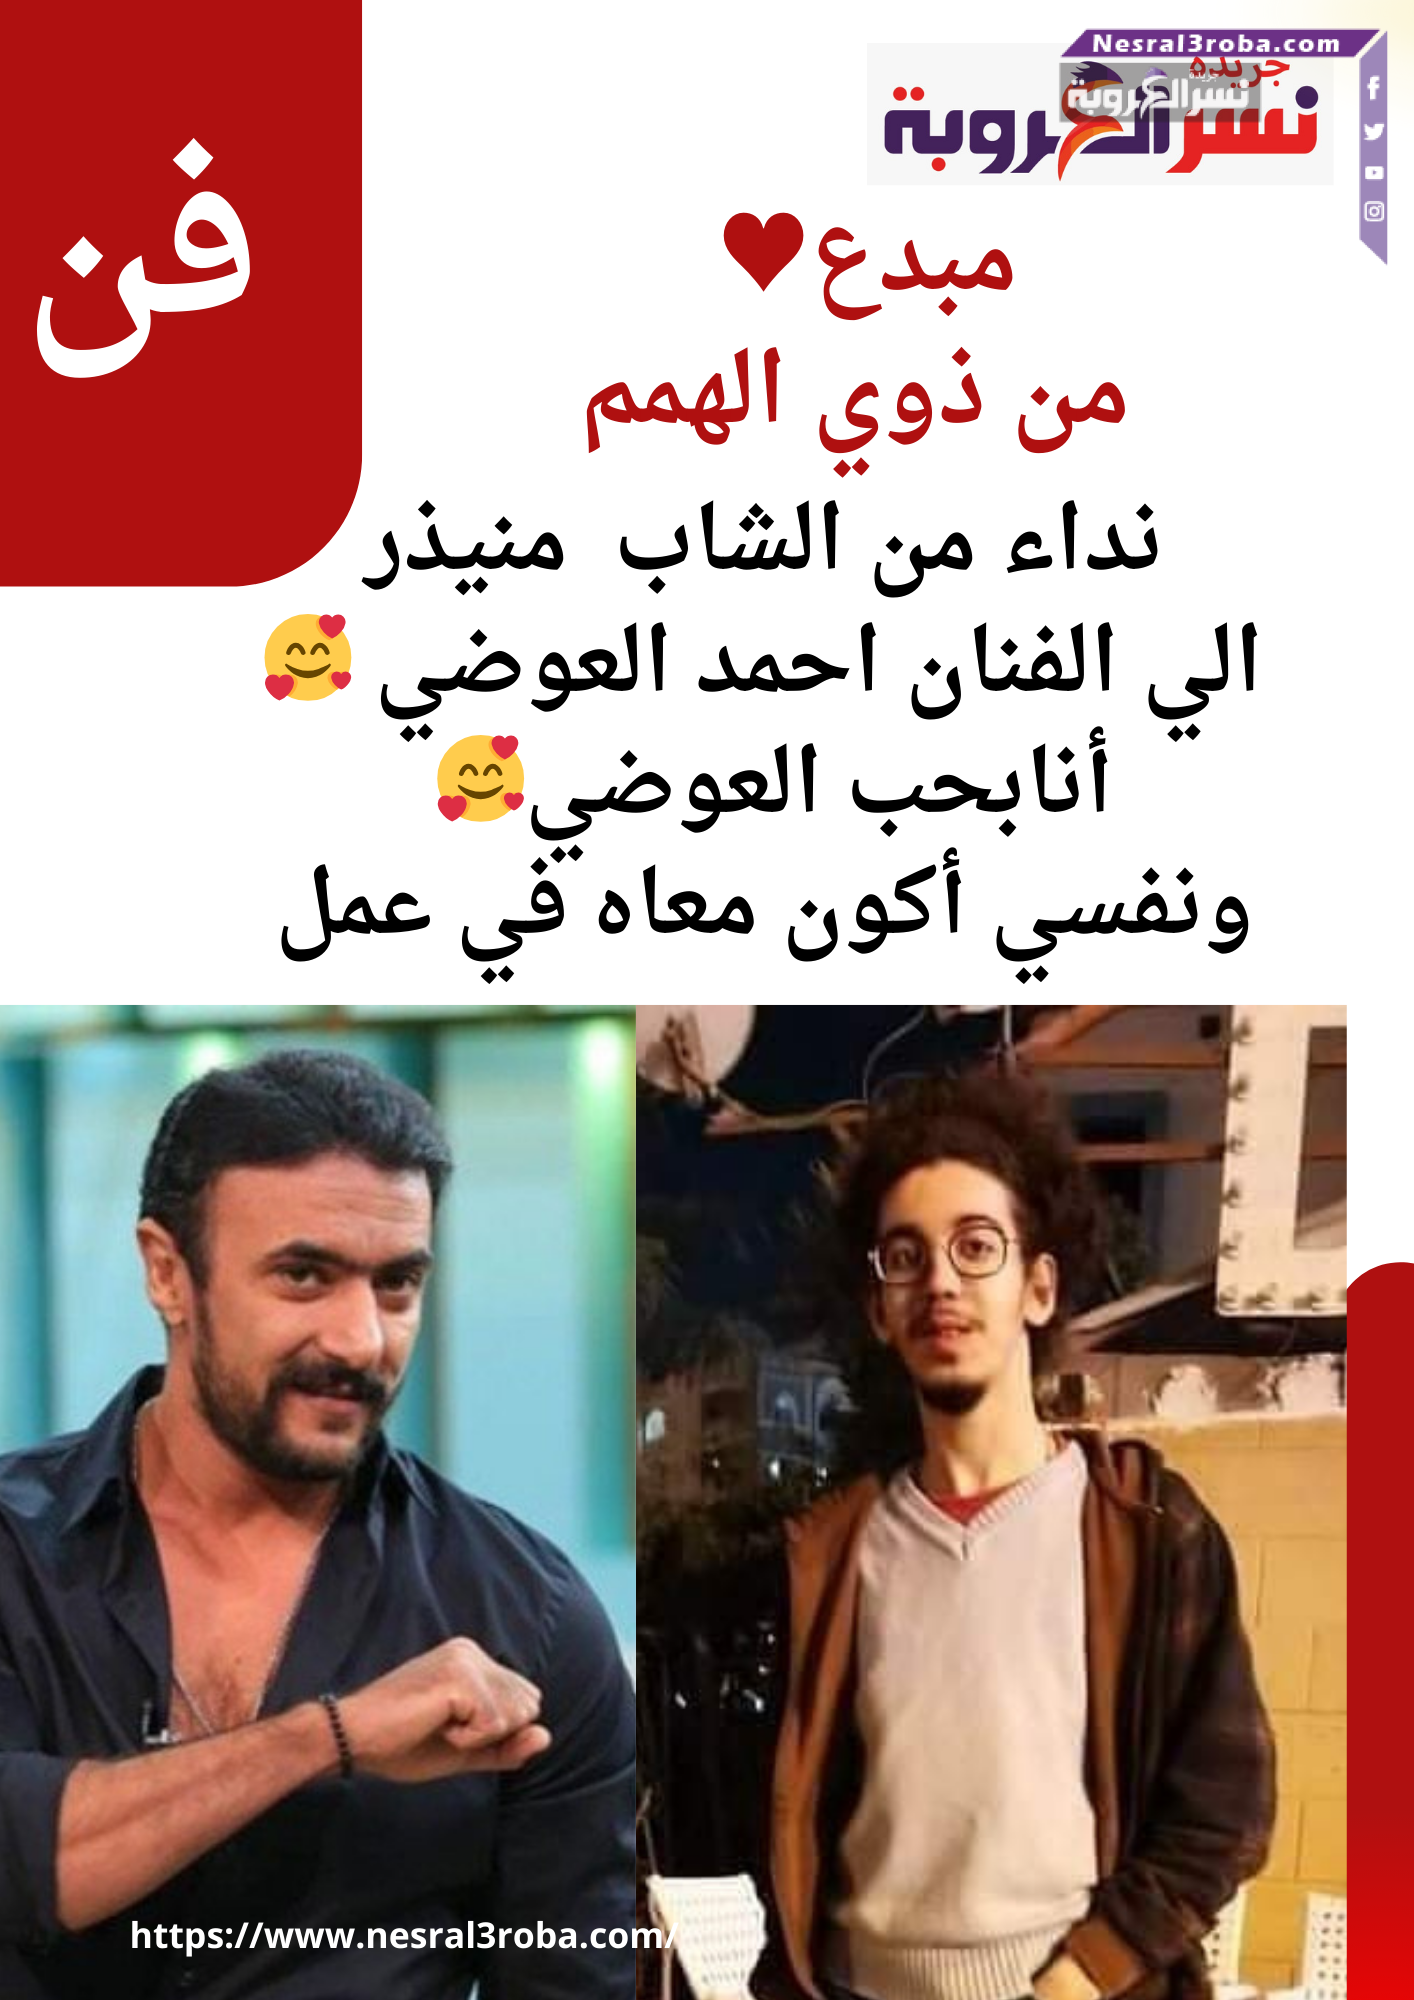 مبدع من ذوي الهمم بحب أحمد العوضي ونفسي أكون معاه في عمل